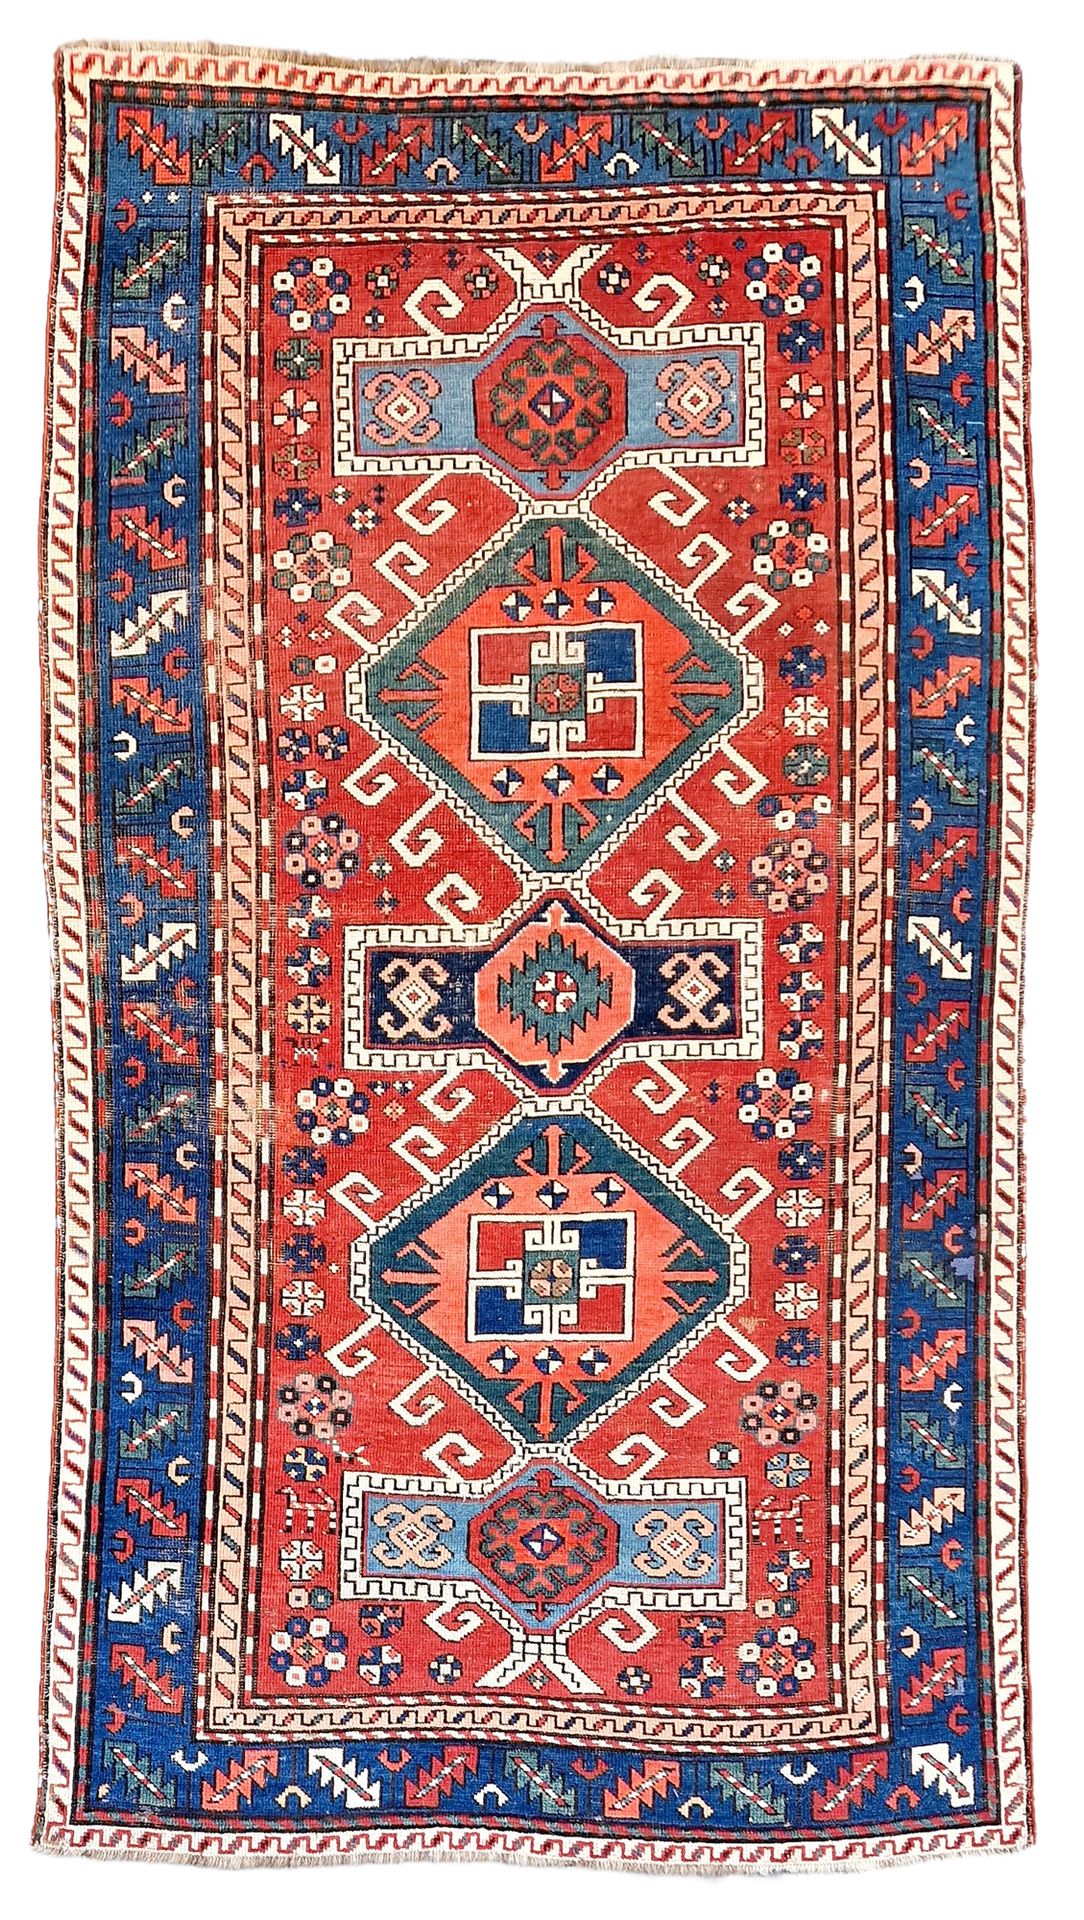 TAPIS D'ORIENT ANCIEN 羊毛材质，饰以几何图形。略有磨损。

尺寸：207 x 117 cm